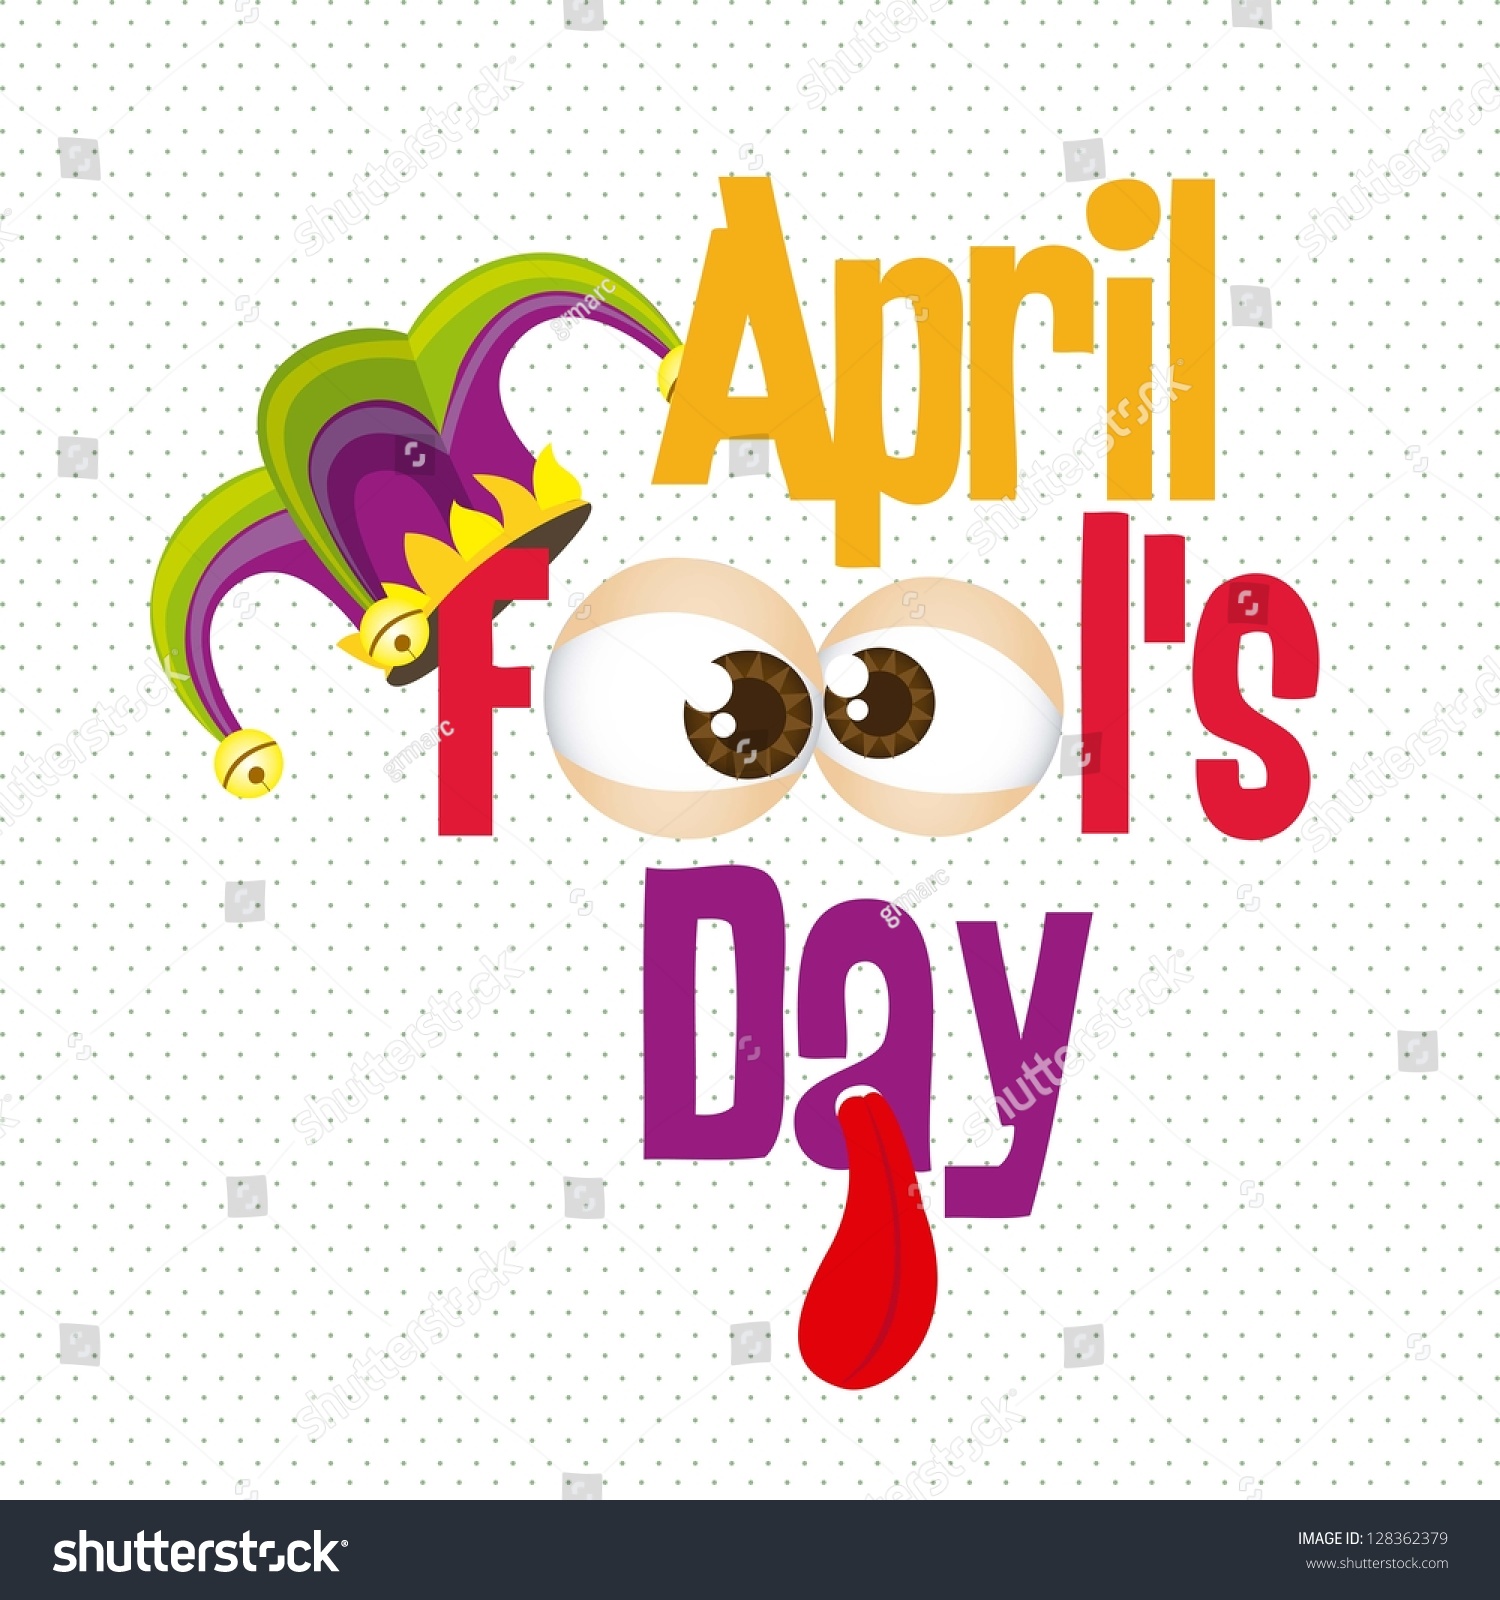 День дурака (April Fool’s Day) празднование